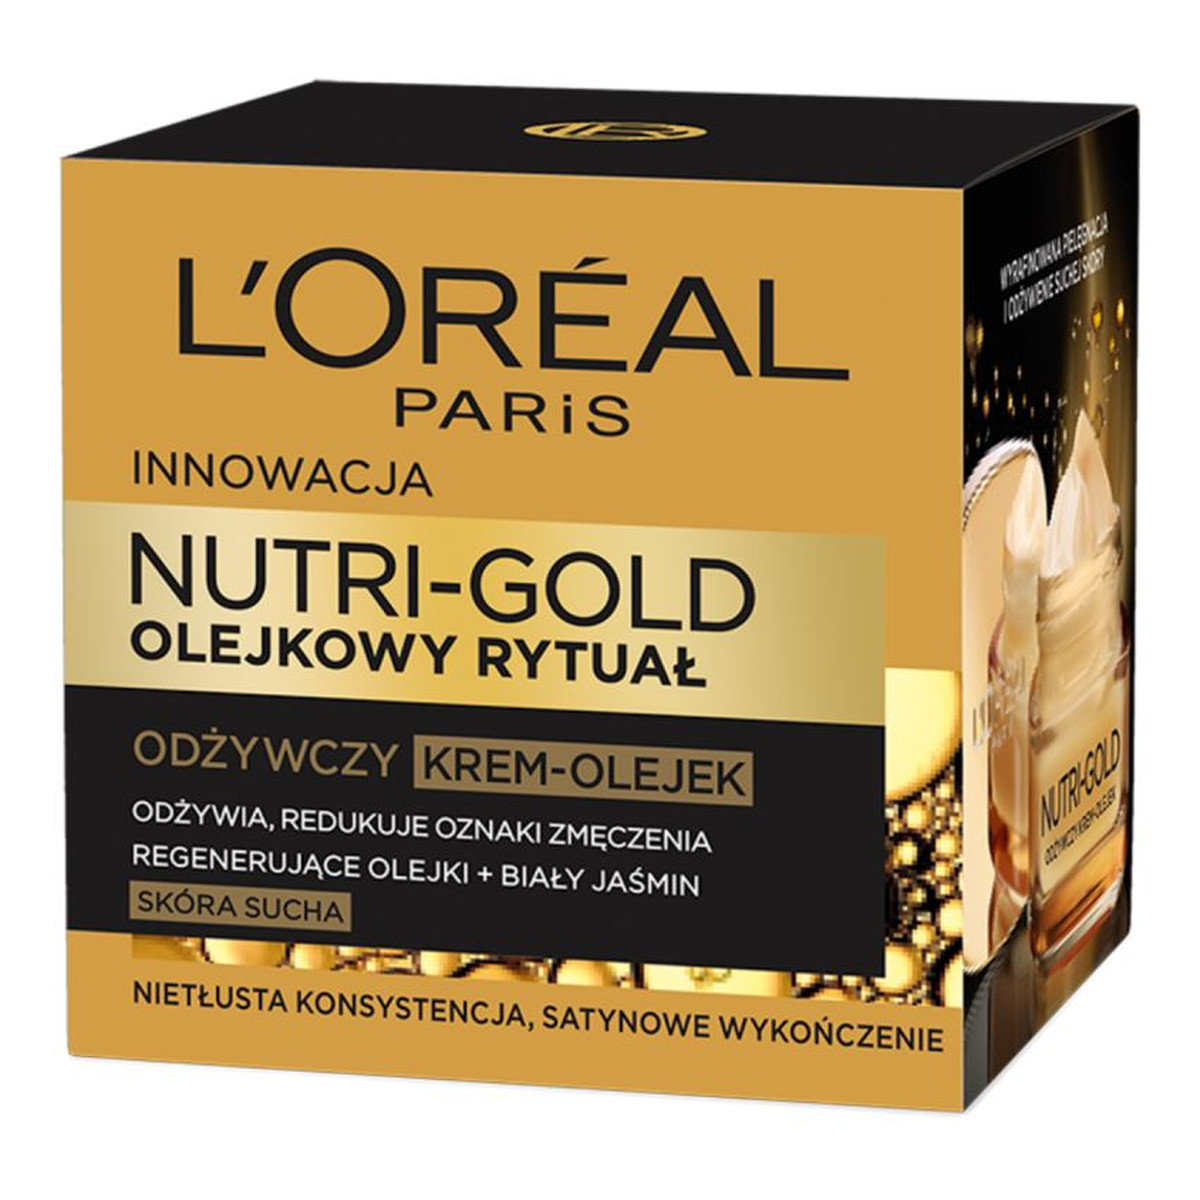 L'Oreal Paris Nutri-Gold Olejkowy Rytuał Odżywczy Krem-Olejek Do Twarzy 50ml